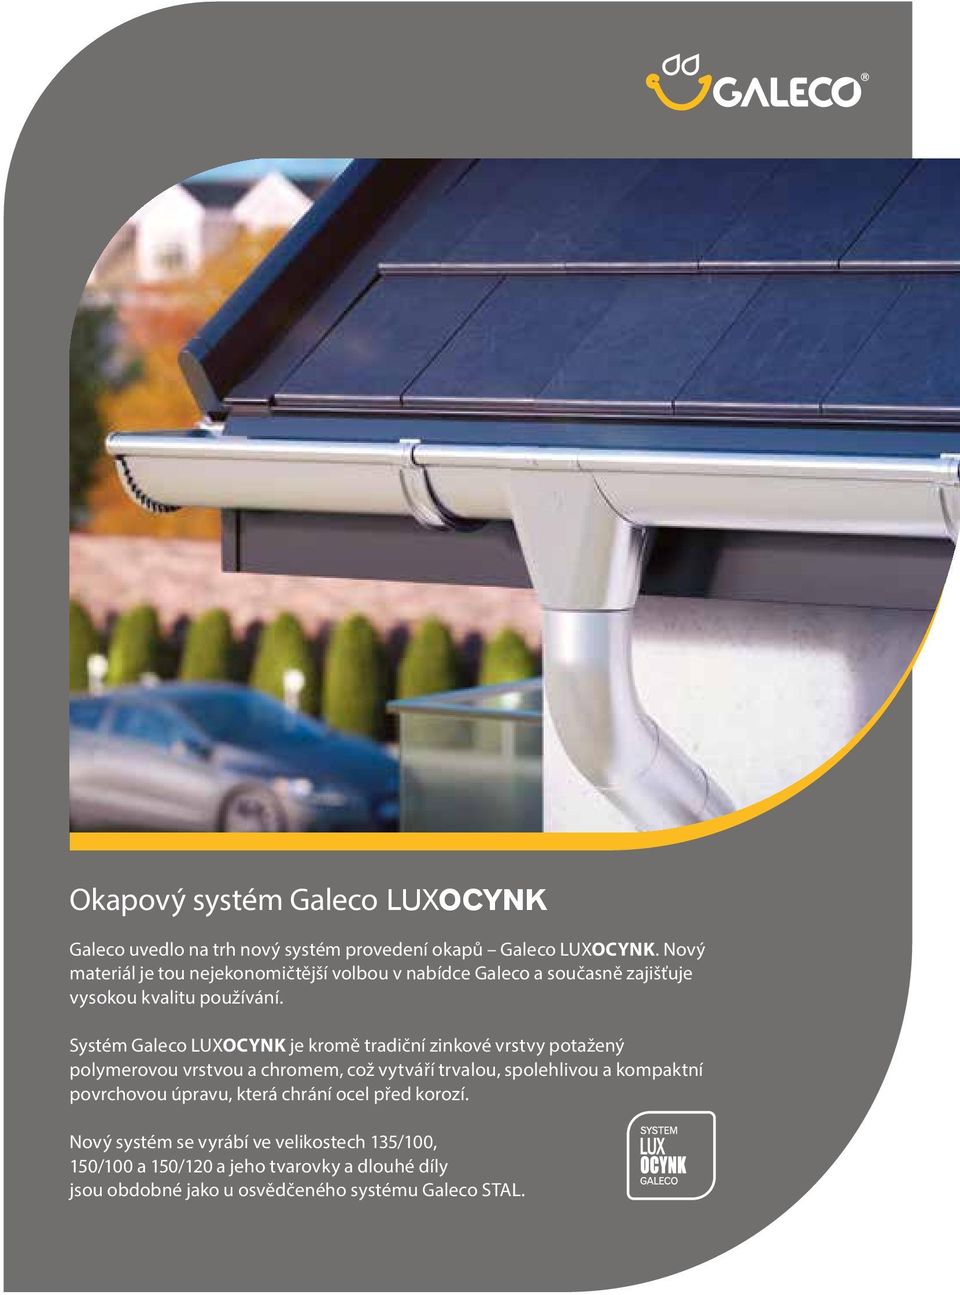 Systém Galeco LUXOCYNK je kromě tradiční zinkové vrstvy potažený polymerovou vrstvou a chromem, což vytváří trvalou, spolehlivou a